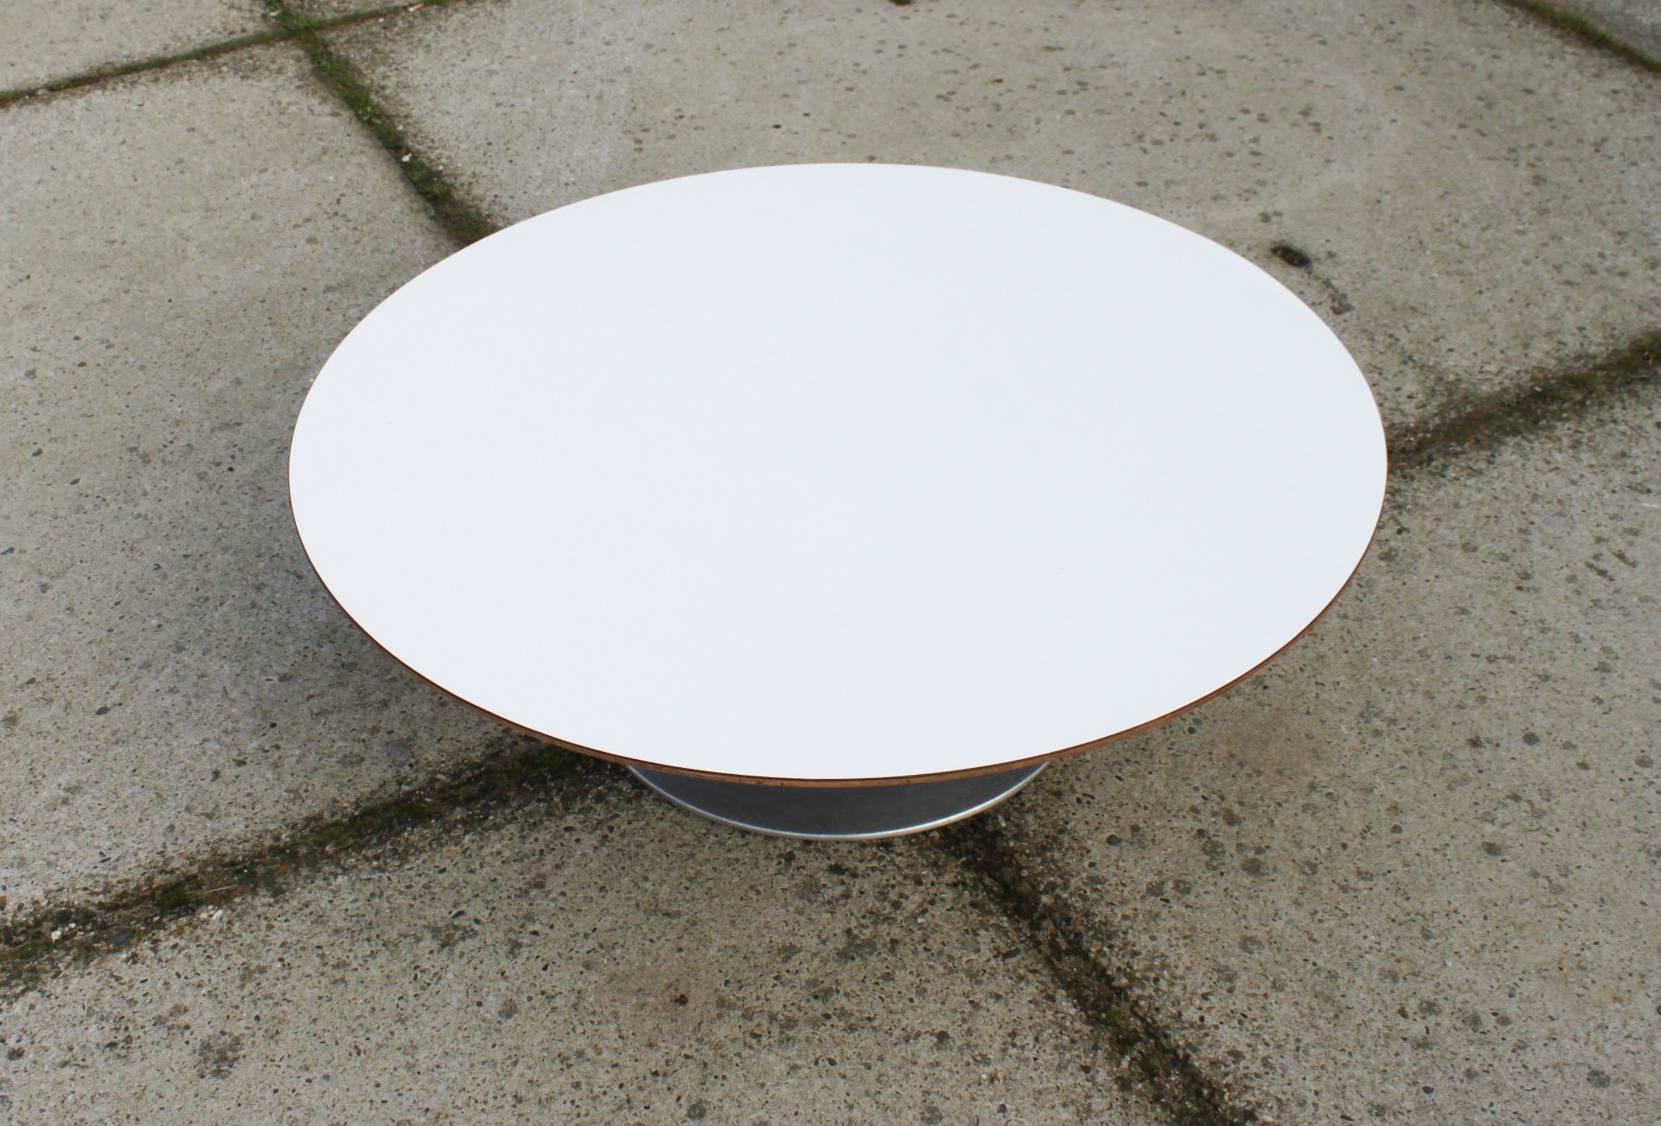 pierre paulin coffee table